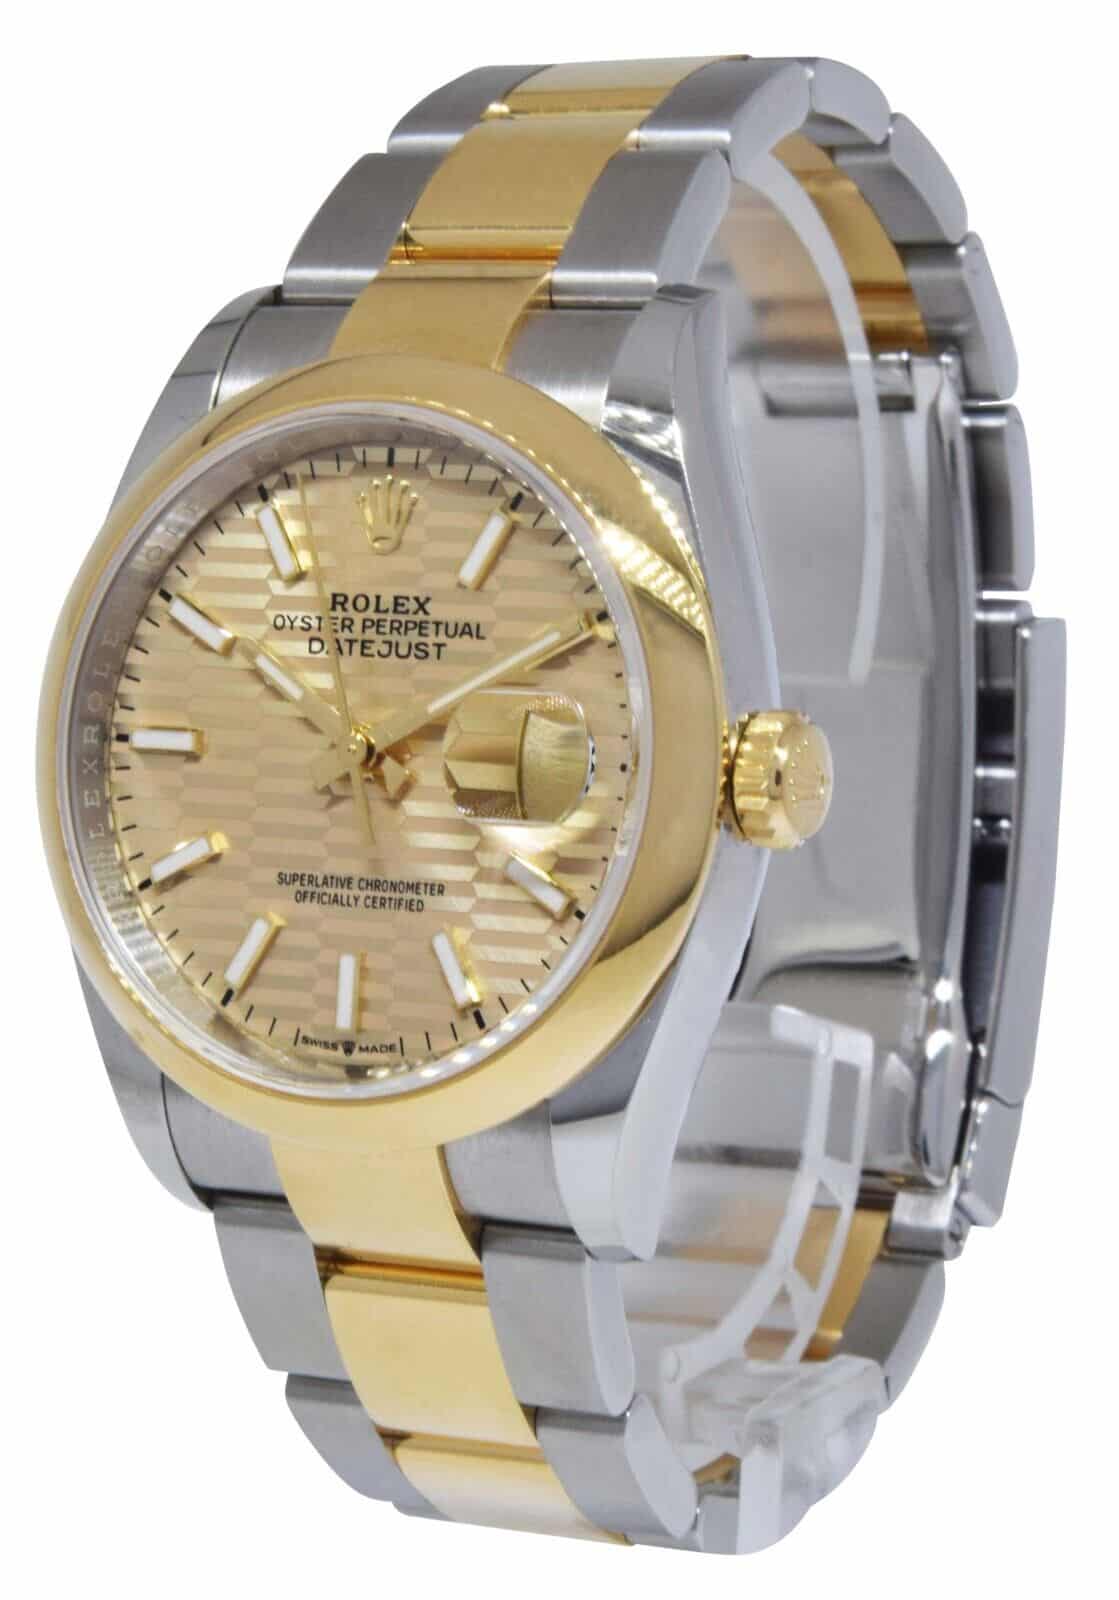 Rolex Datejust 36 Yellow Gold/Steel Golden Fluted Motif Dial Mens Watch 126203